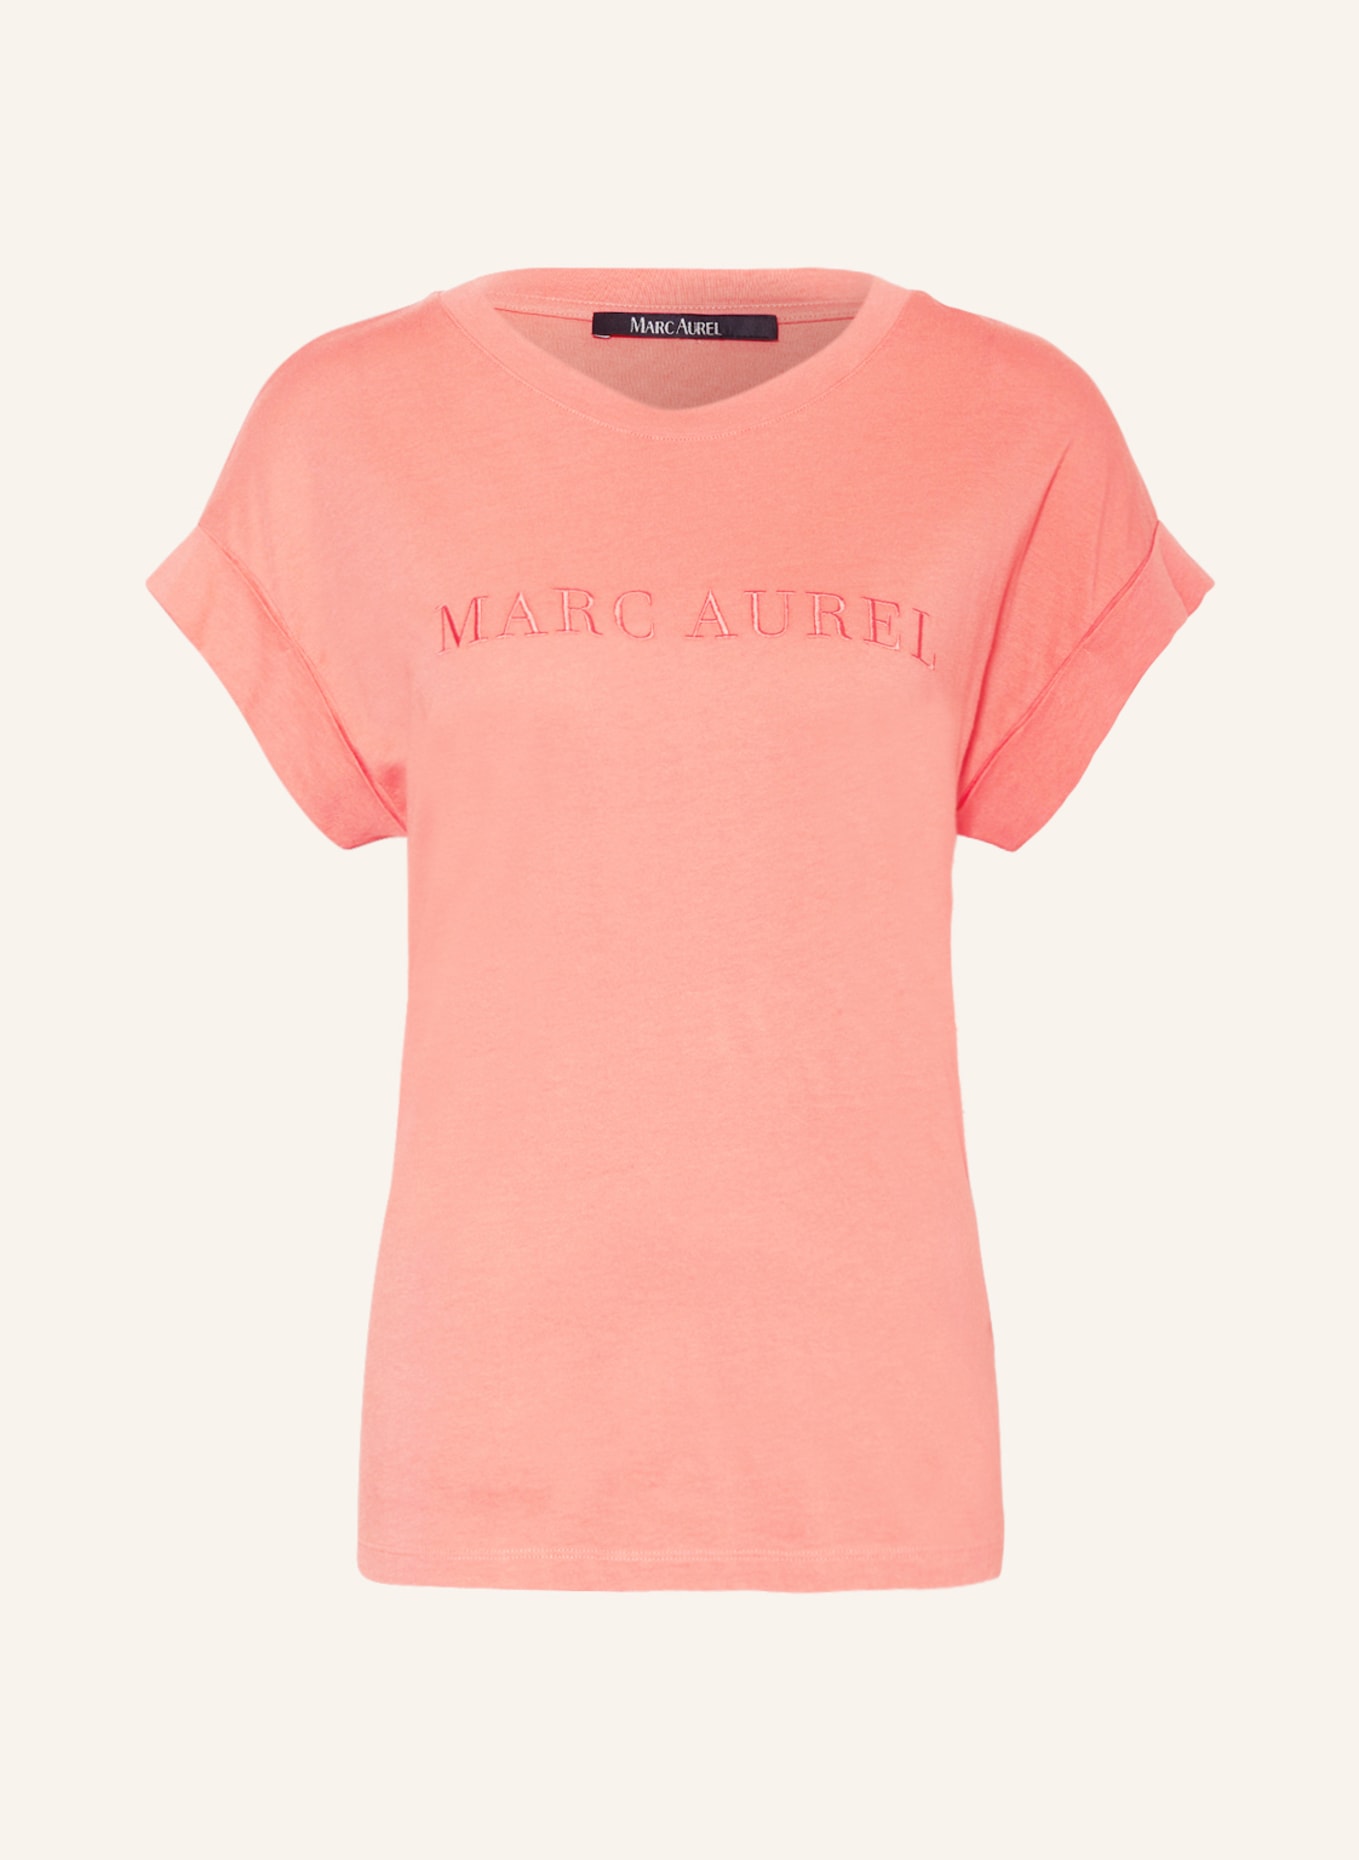 MARC AUREL T-shirt, Color: SALMON (Image 1)